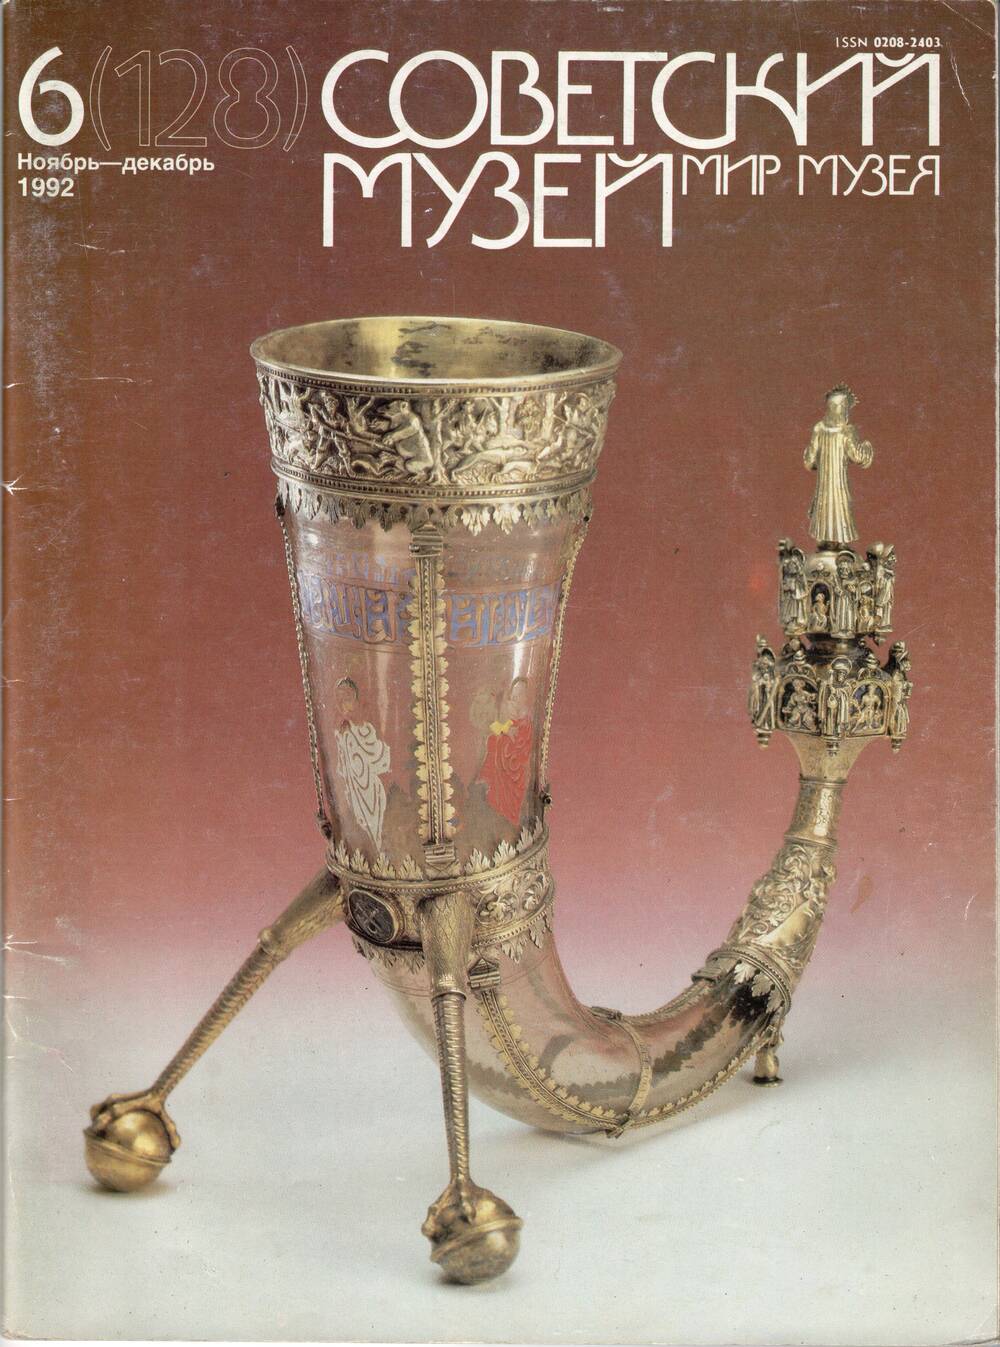 Журнал Советский музей, № 6 1992 г. с автографом Э. Матониной.